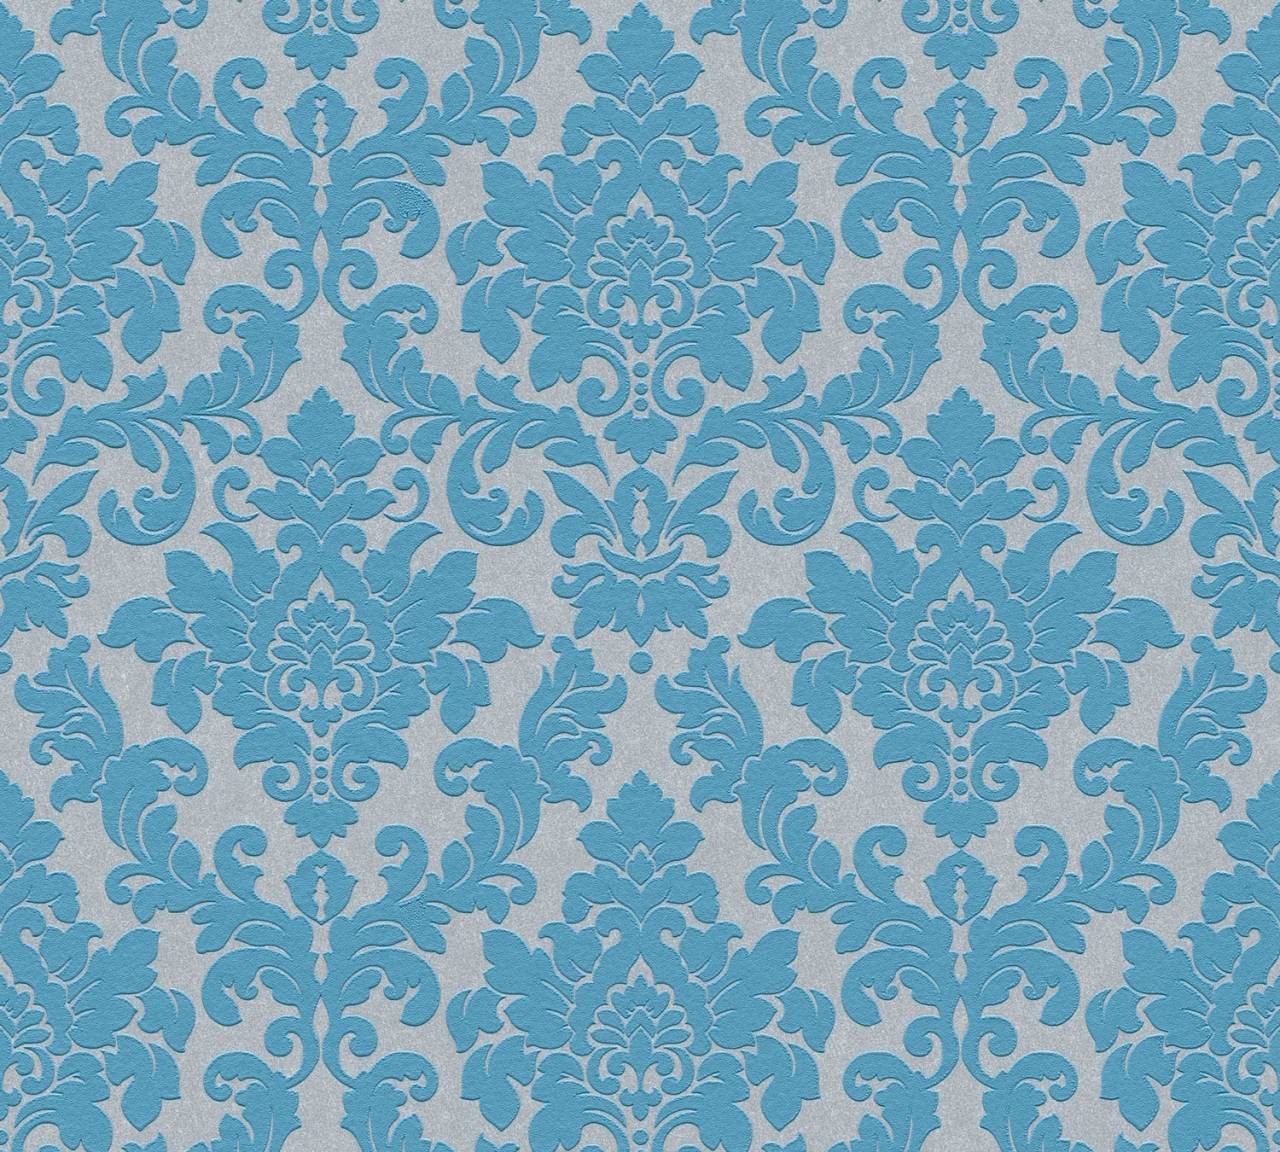 Thomas Non-Woven Wallpaper Baroque Silver/Blue Tlt016 - 360954